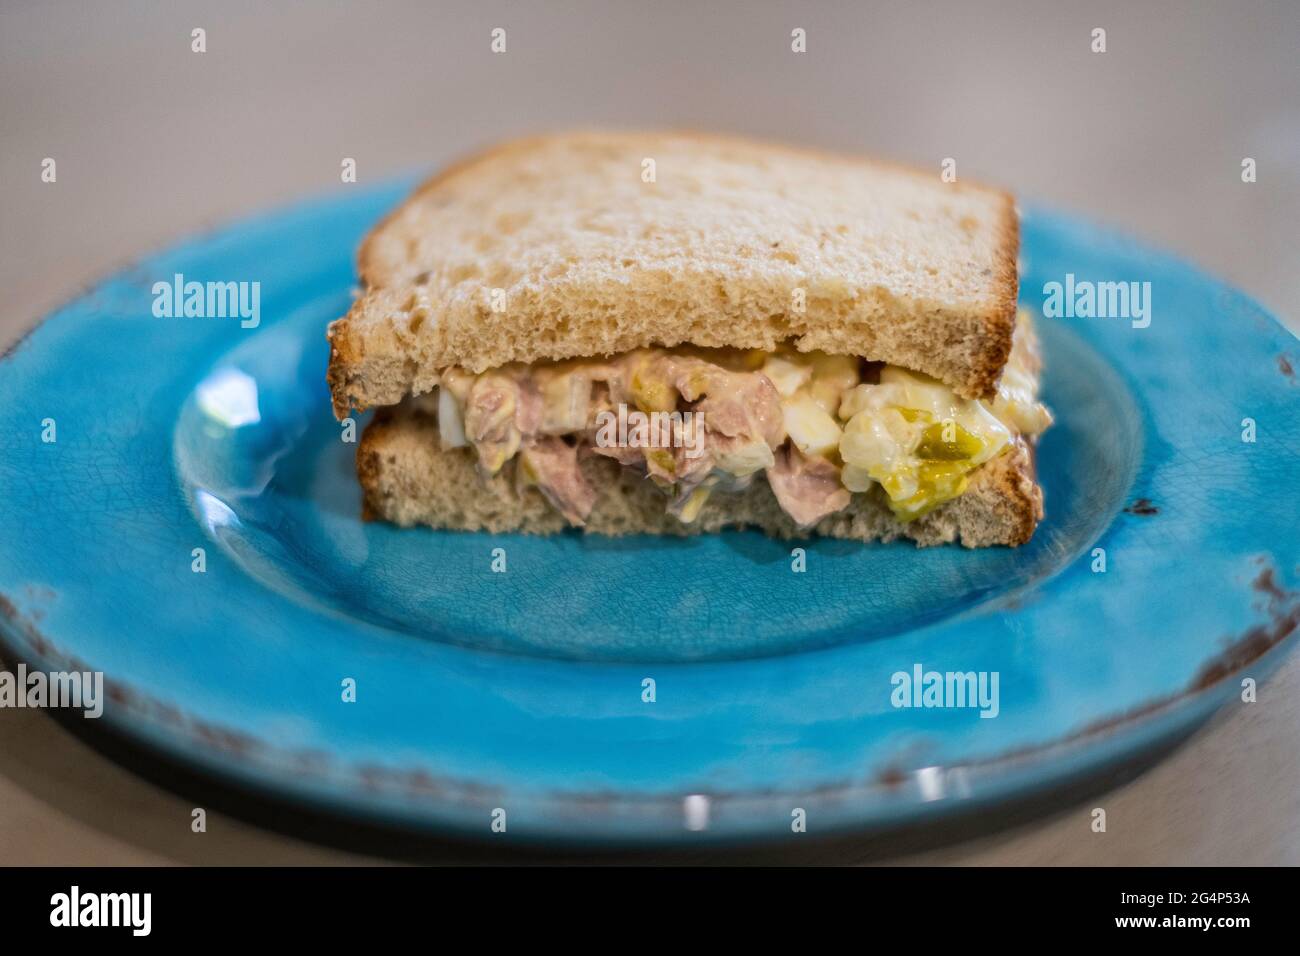 La moitié d'un sandwich de thon avec du pain d'avoine sur une assiette bleue. Gros plan. Banque D'Images